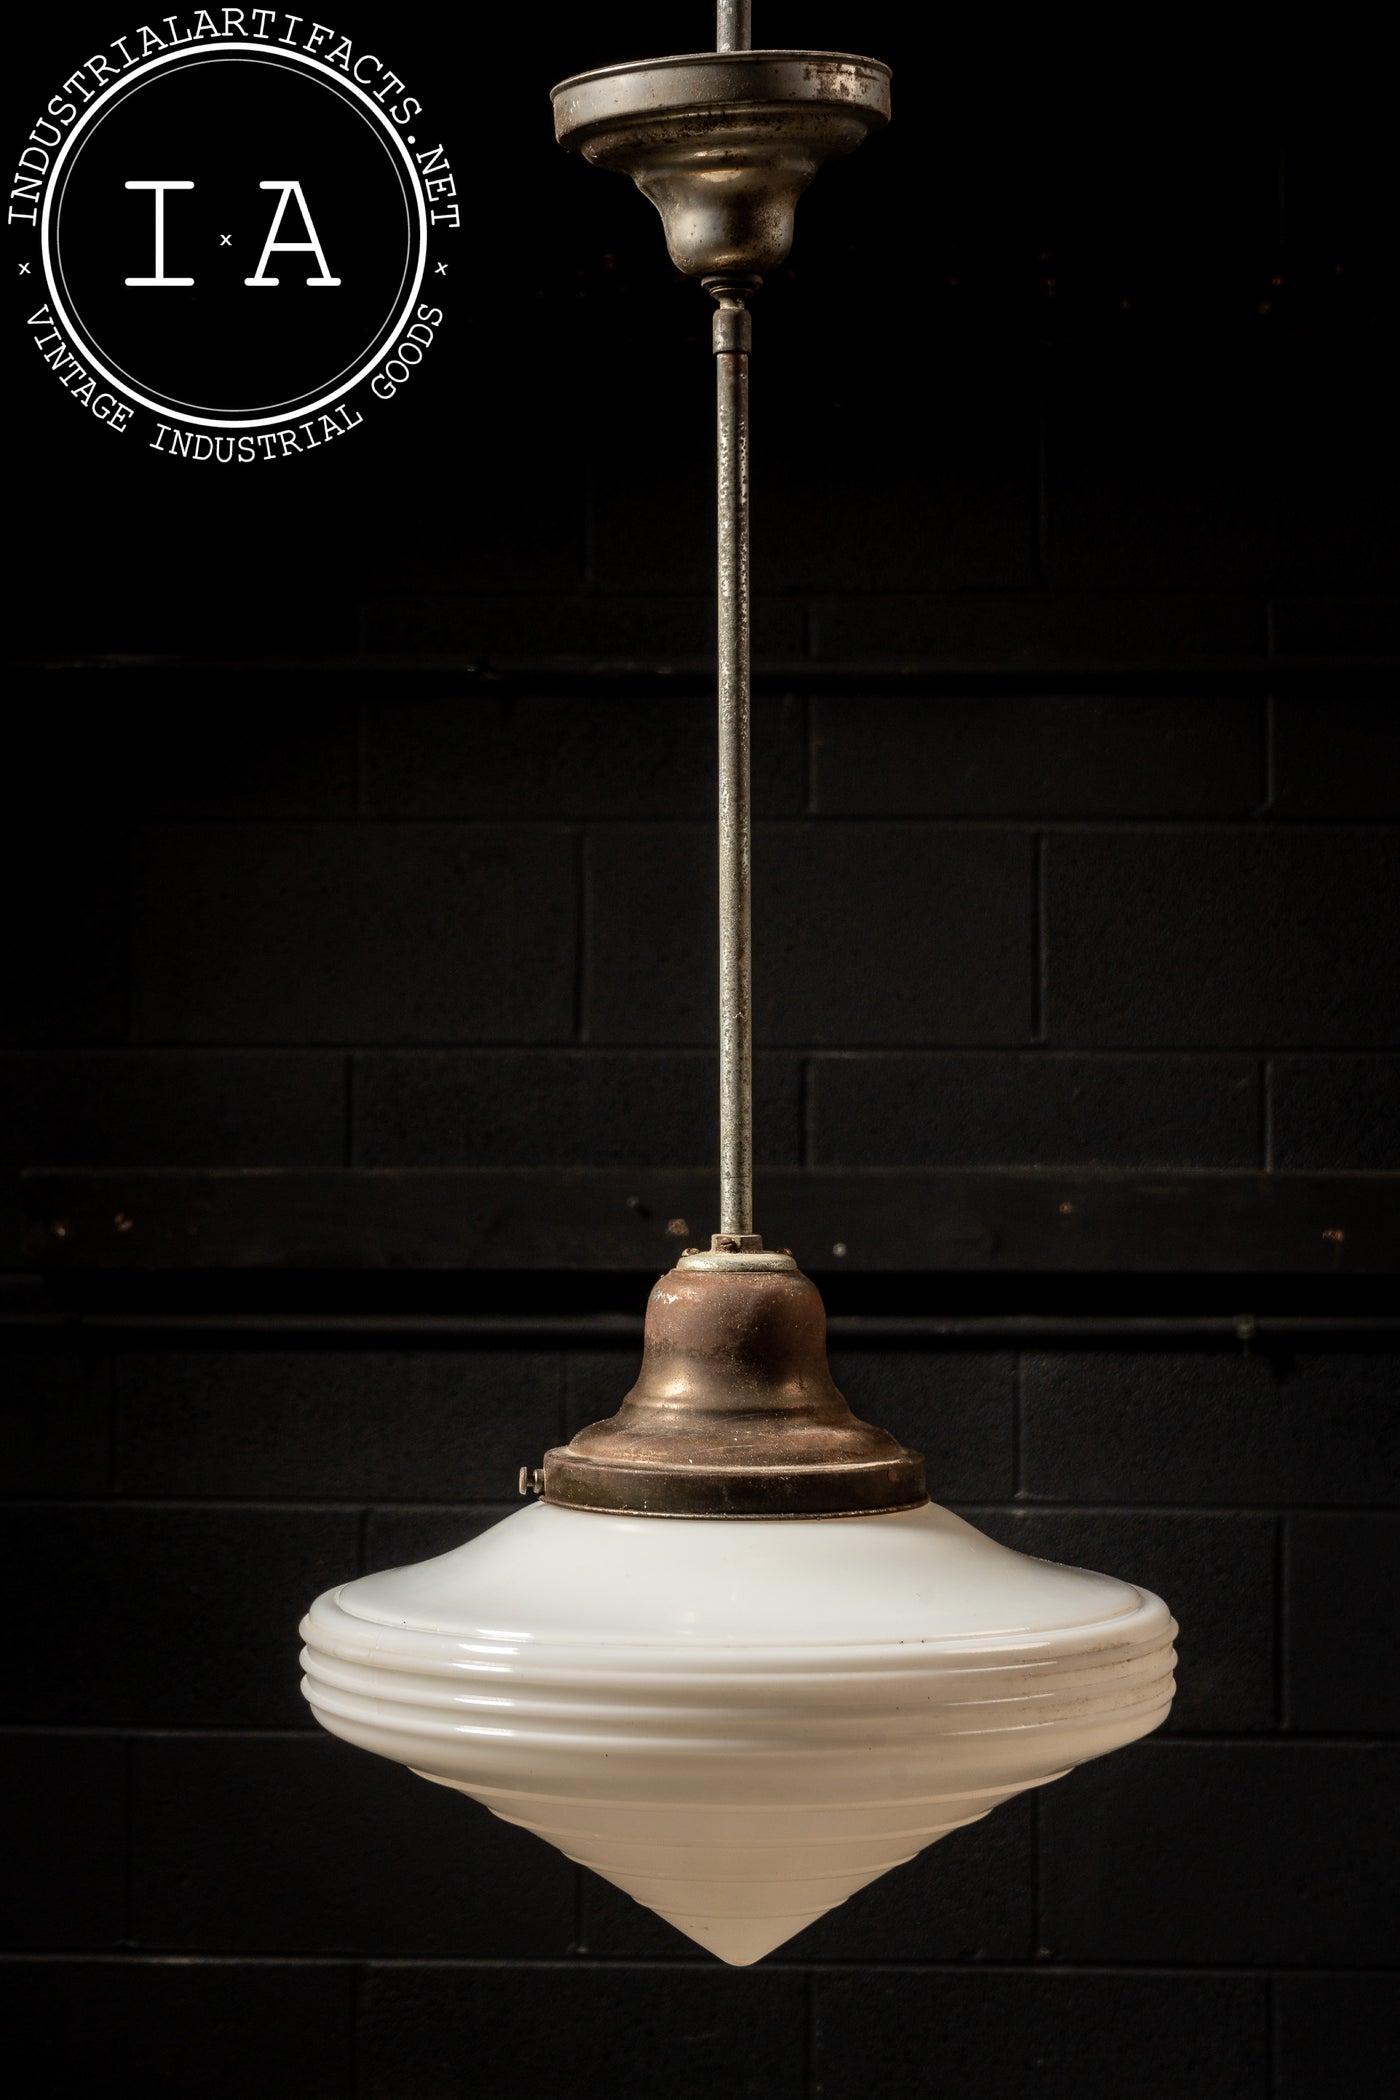 Antique Schoolhouse Ceiling Lamp with Medium Shade